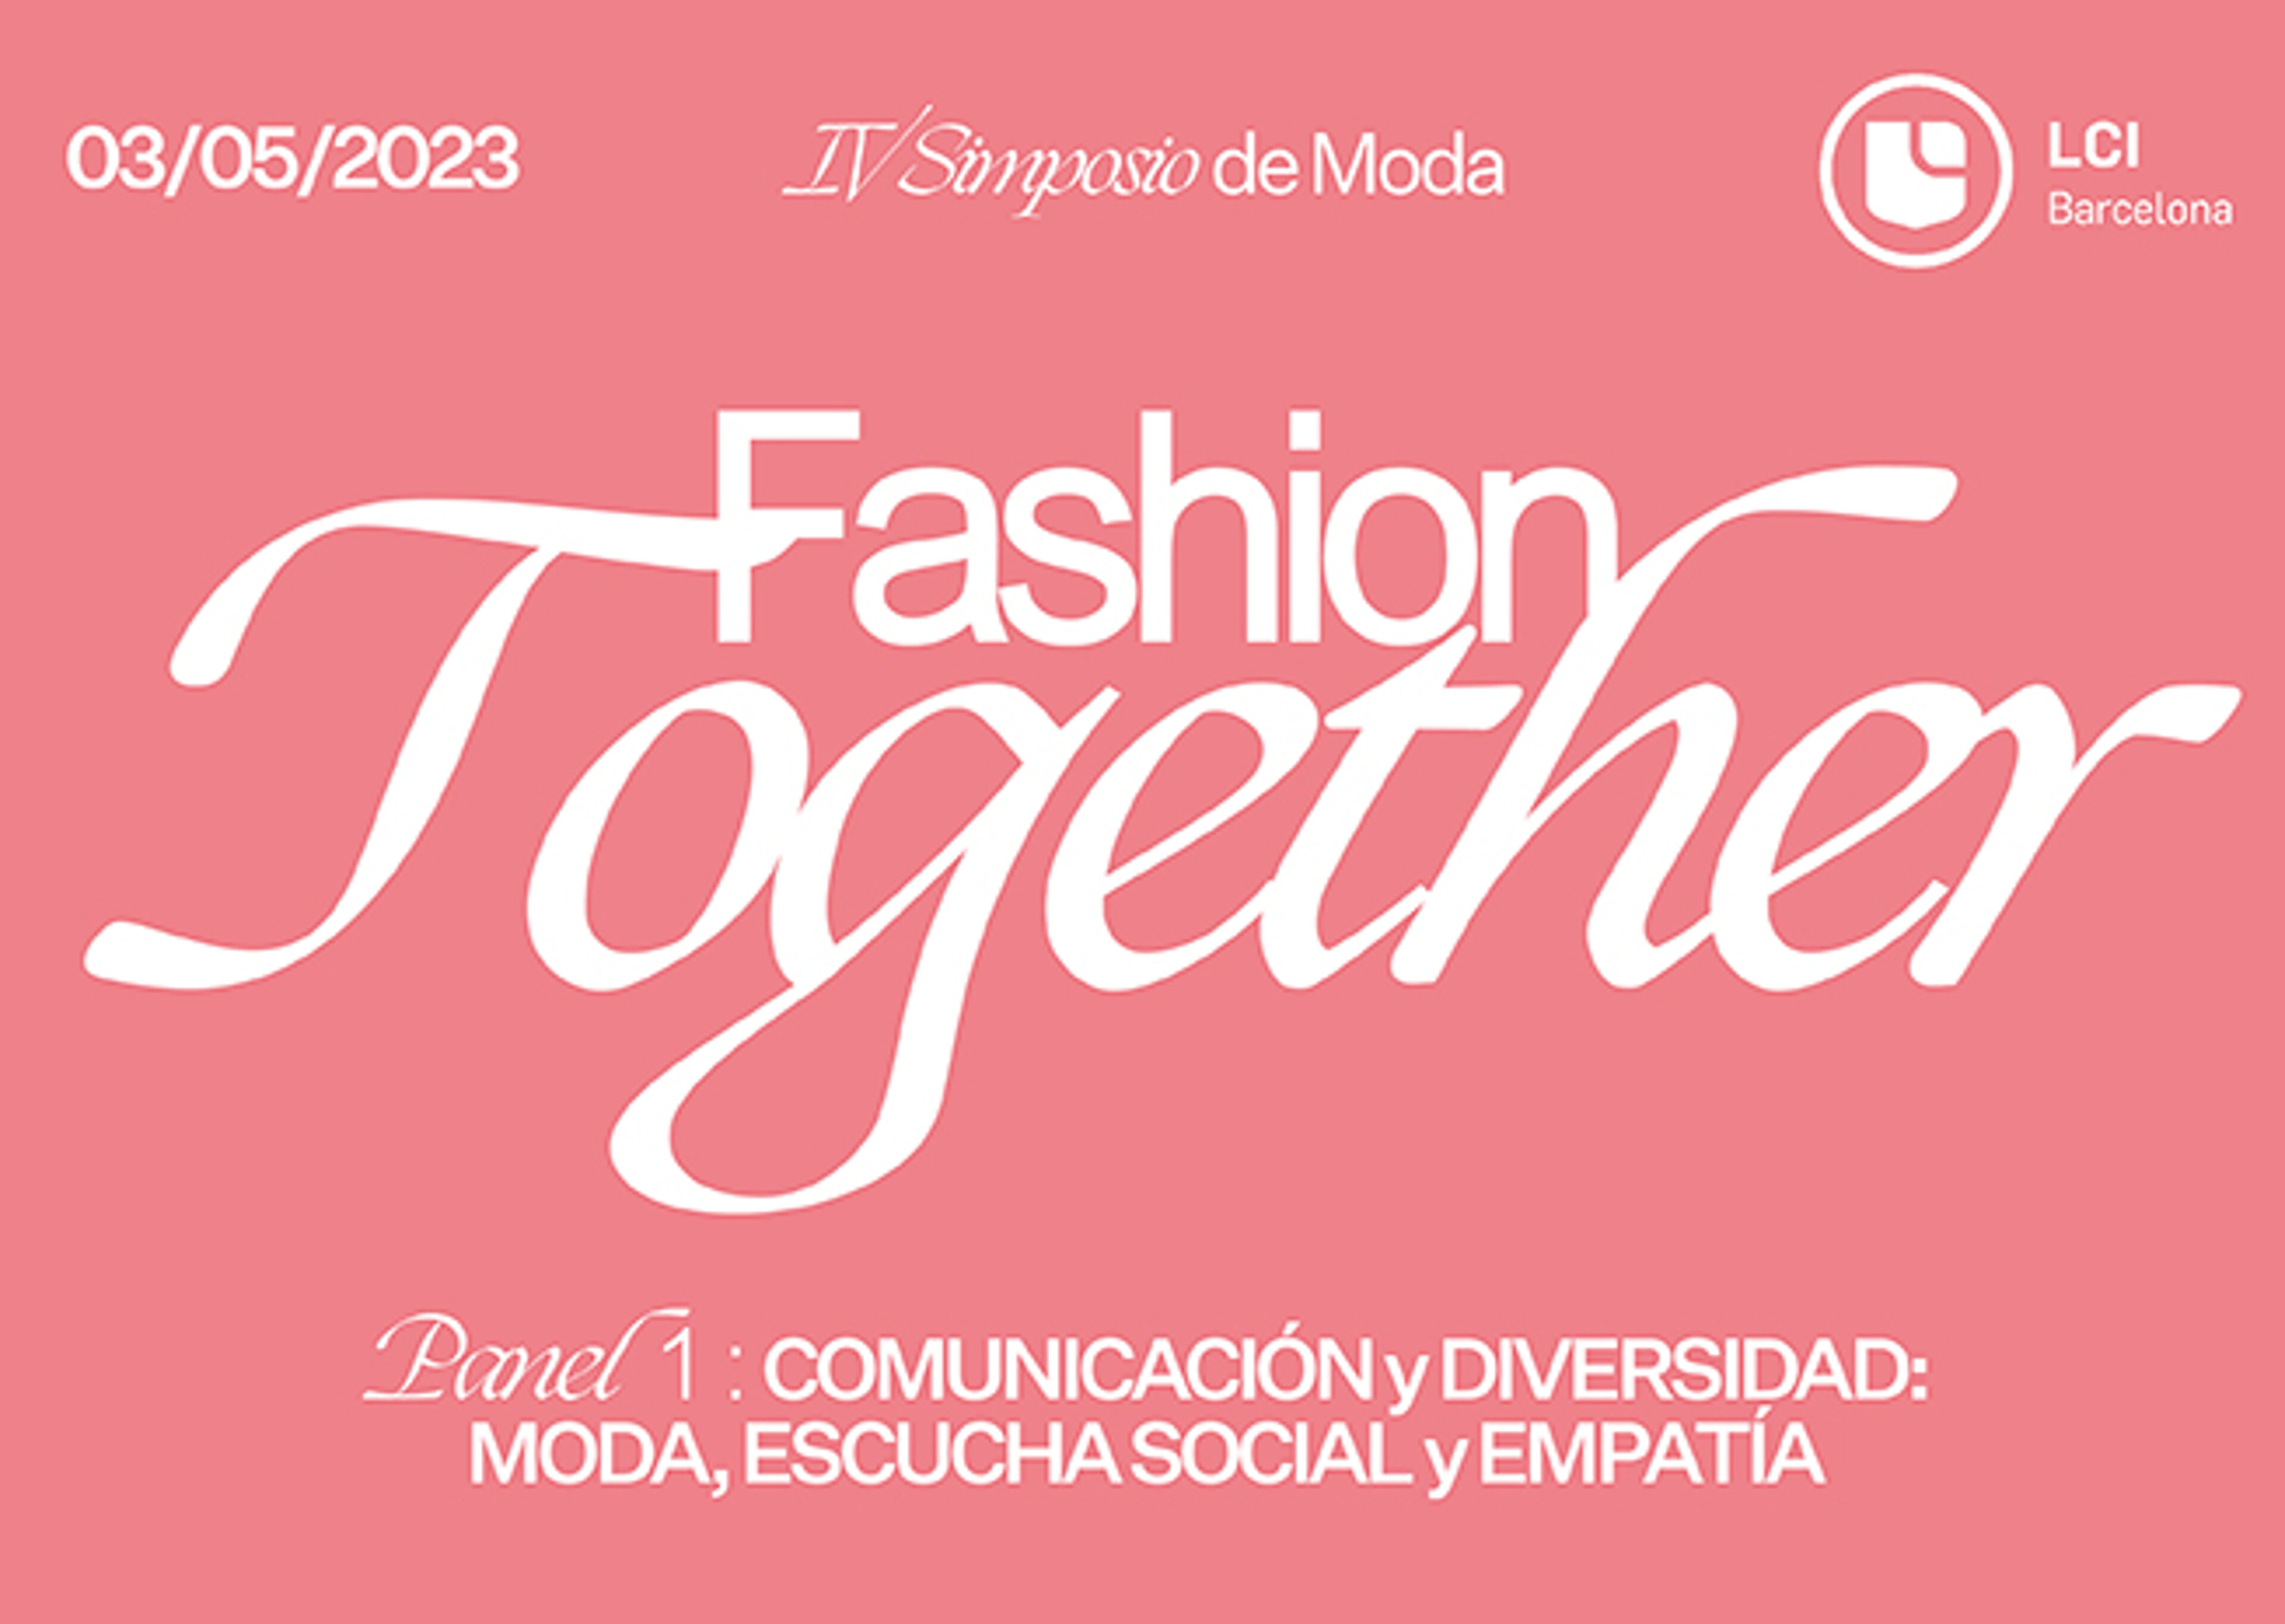 Pòster promocional de 'Fashion Together', un simposi de moda el 3 de maig de 2023, centrat en la comunicació i la diversitat, l'escolta social i l'empatia.